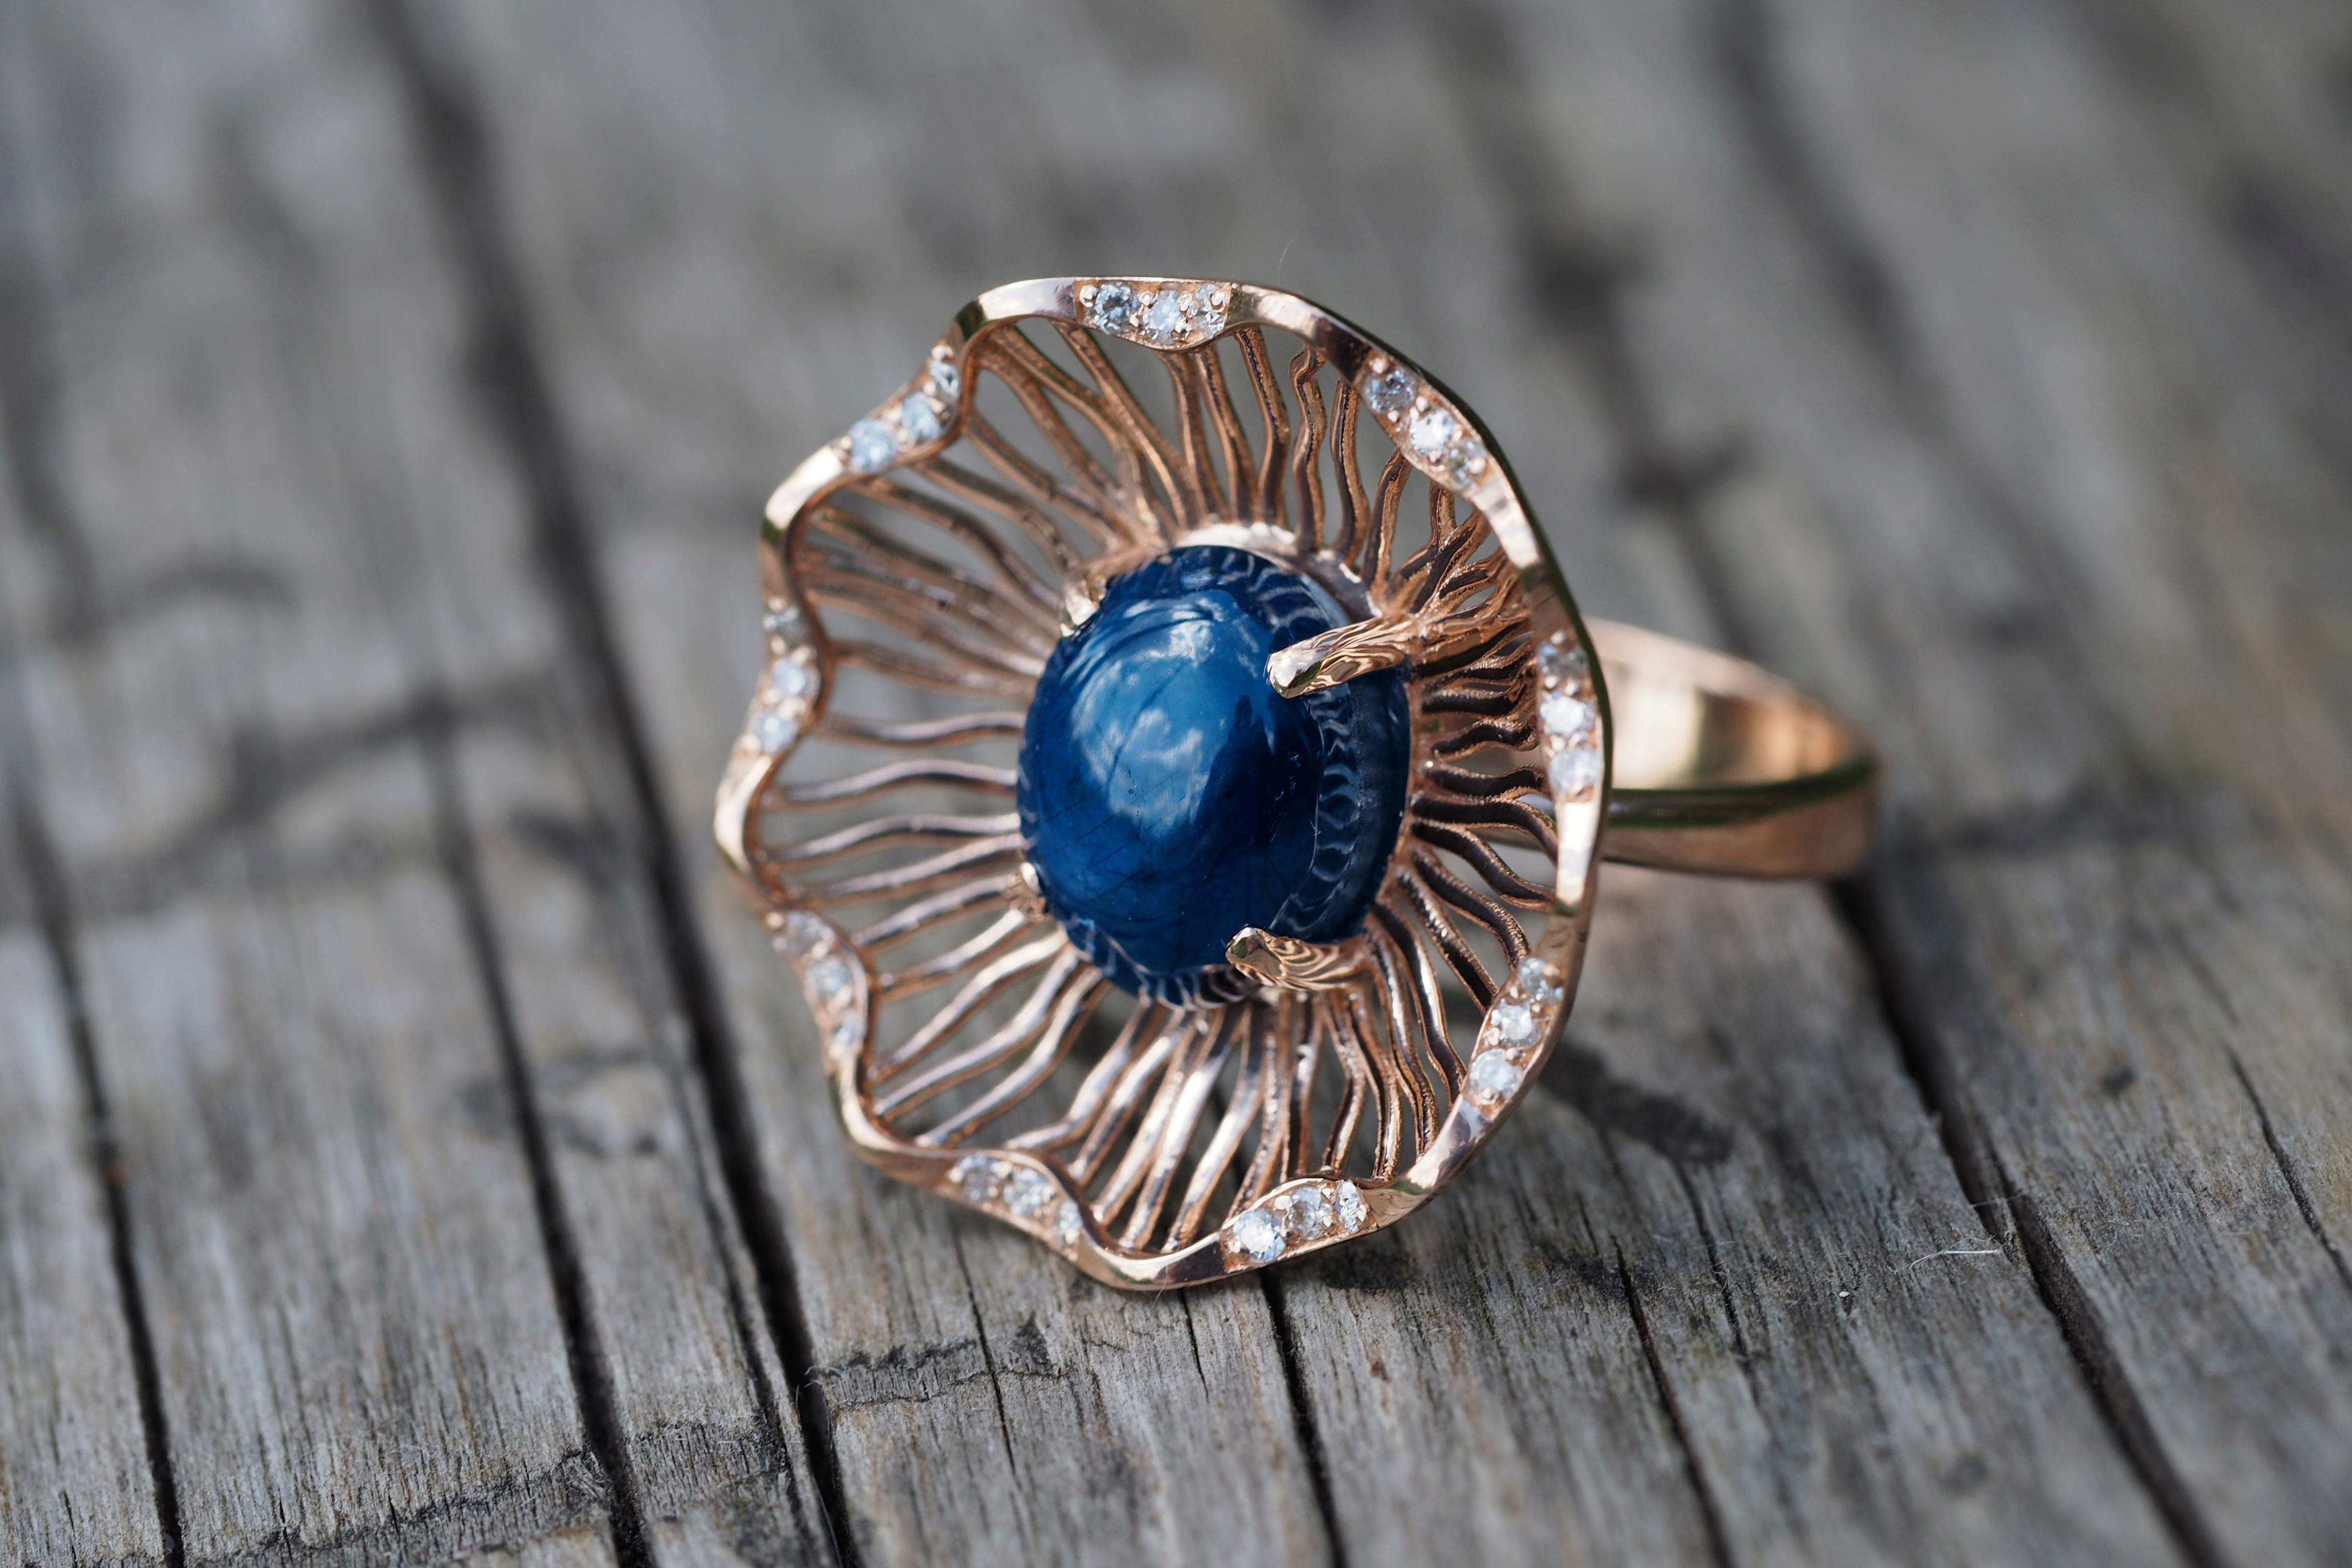 Ovaler Cabochon-Saphir-Ring aus 14k Gold. 
Ring mit blauem Saphir. Vintage-Ring mit Saphir. Ring mit Saphirblüte. Saphir-Cocktailring.

Metall: 14k Gold
Gewicht: 4,45 gr. je nach Größe.

Edelsteine (alle sind von professionellen Gemmologen